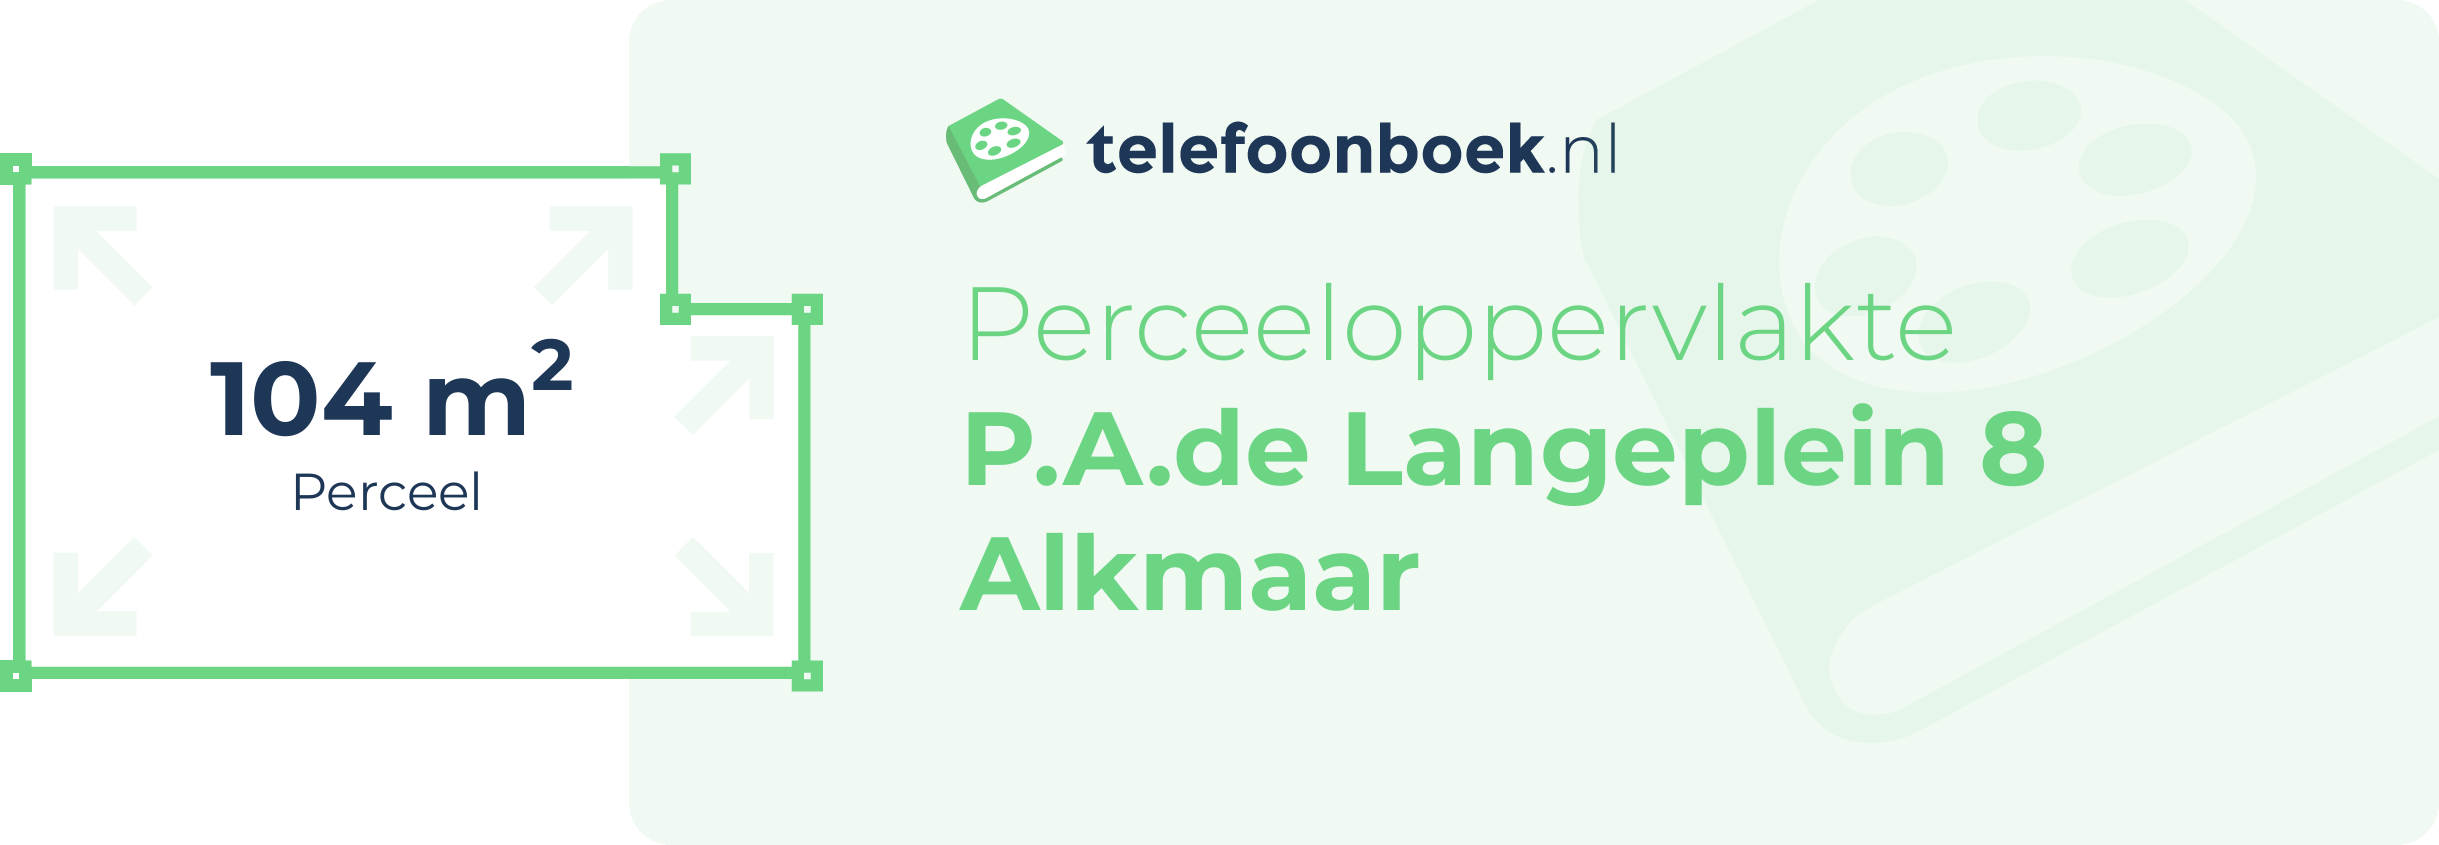 Perceeloppervlakte P.A.de Langeplein 8 Alkmaar